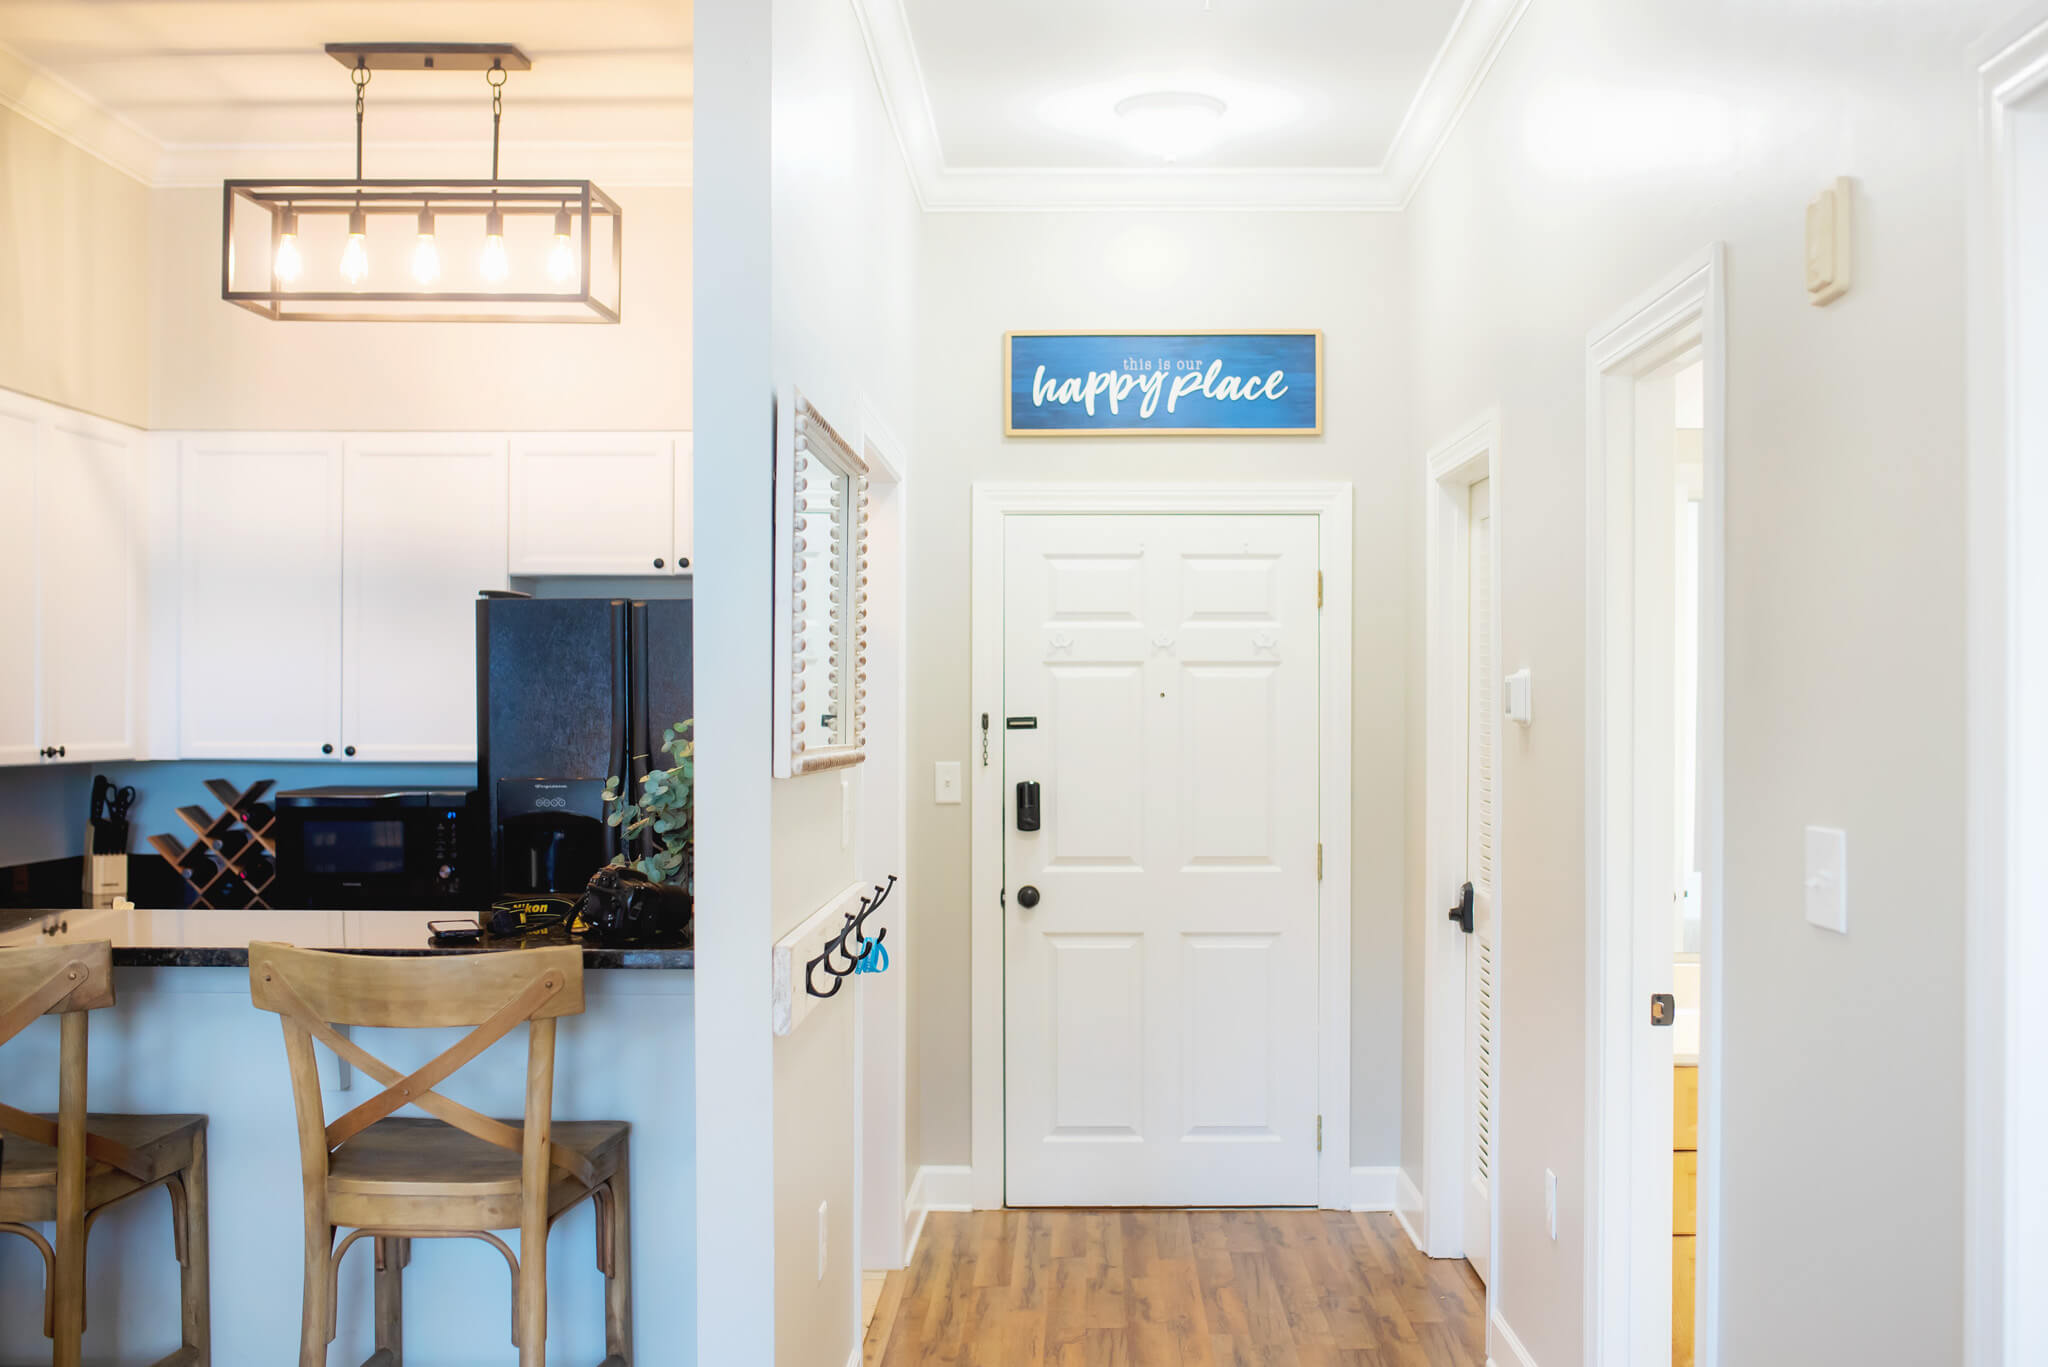 Best Door Lock For Airbnb Rentals